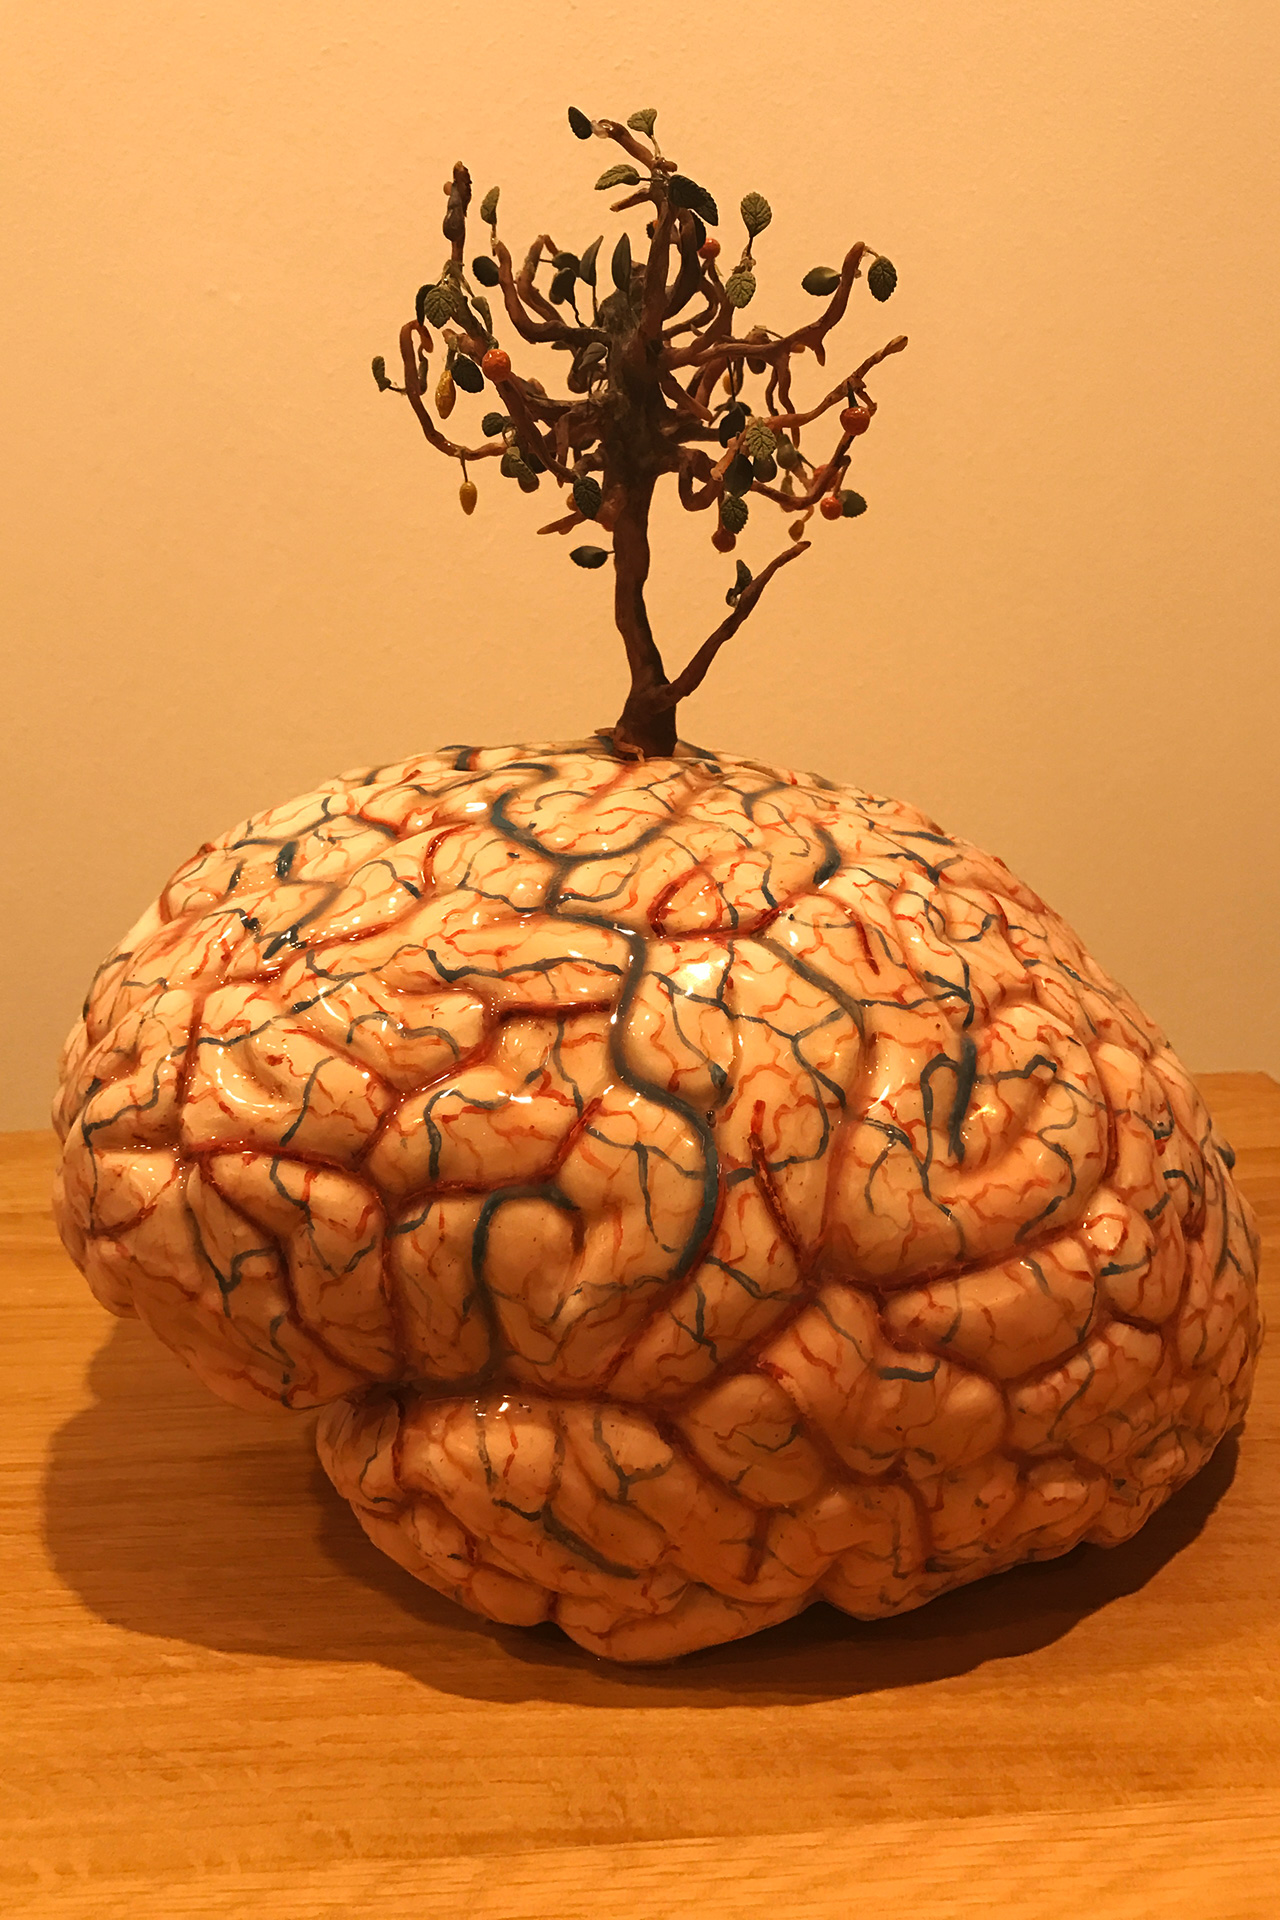 'A Brain Tree' del artista Een breinboom en la galería Jan Fabre. 